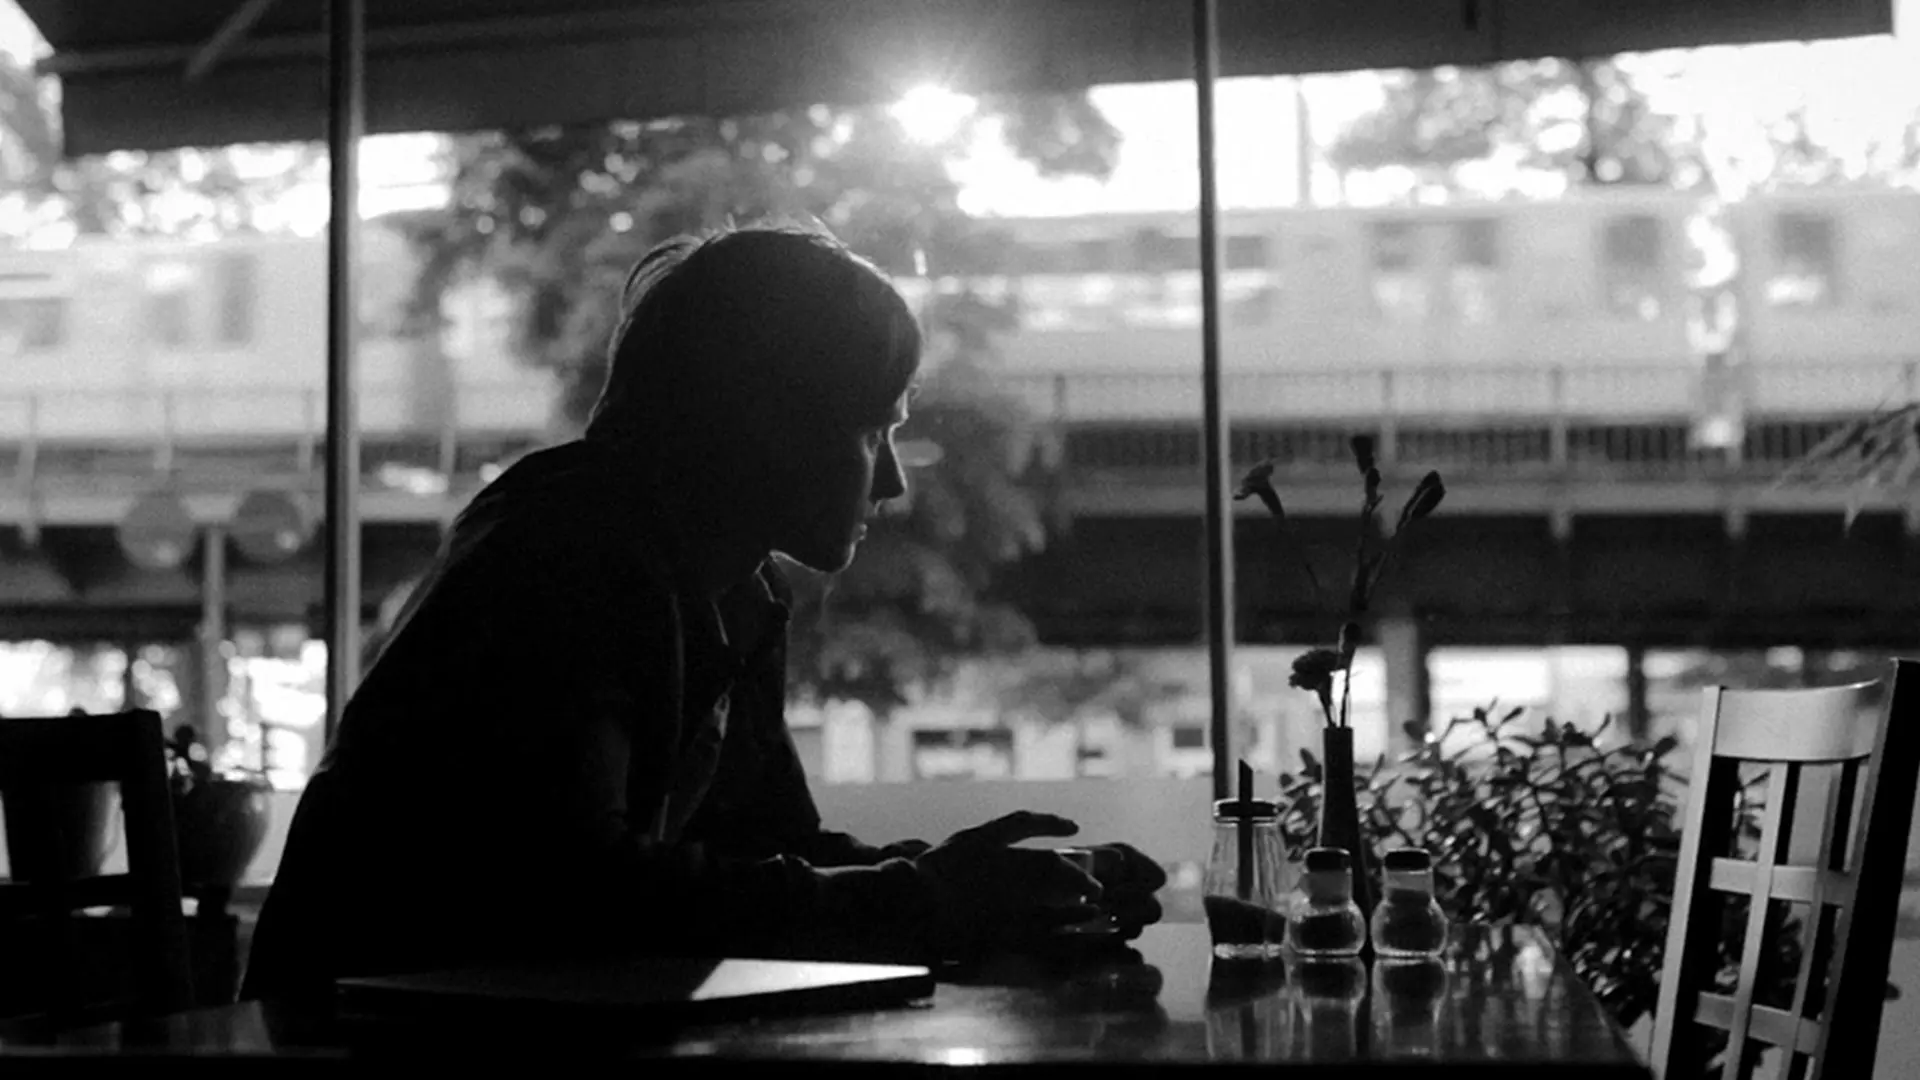 نیکو در حال خوردن قهوه در فیلم یک قهوه در برلین